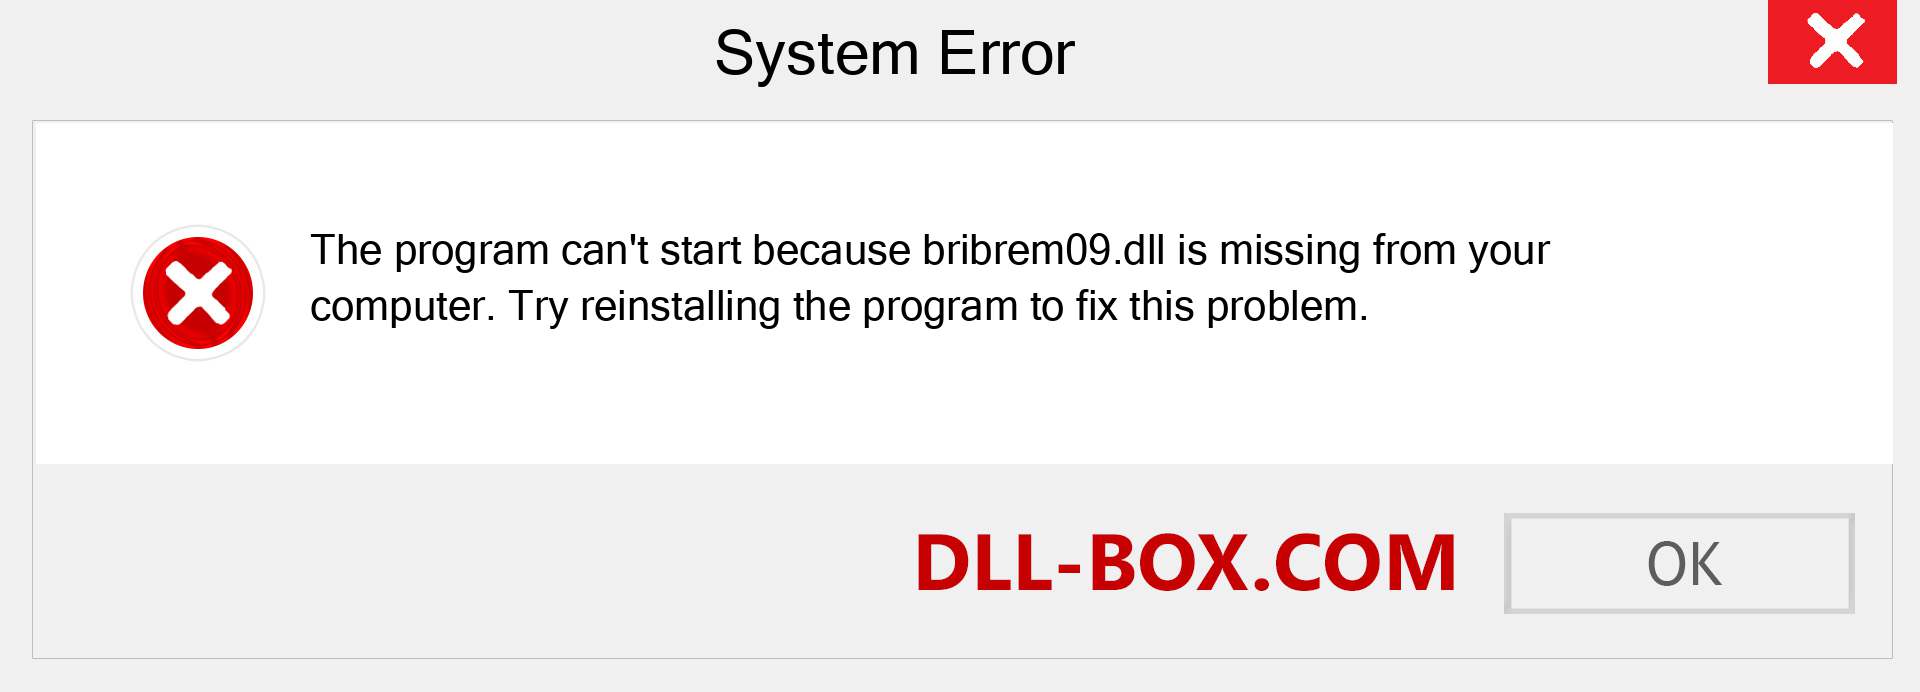  bribrem09.dll file is missing?. Download for Windows 7, 8, 10 - Fix  bribrem09 dll Missing Error on Windows, photos, images